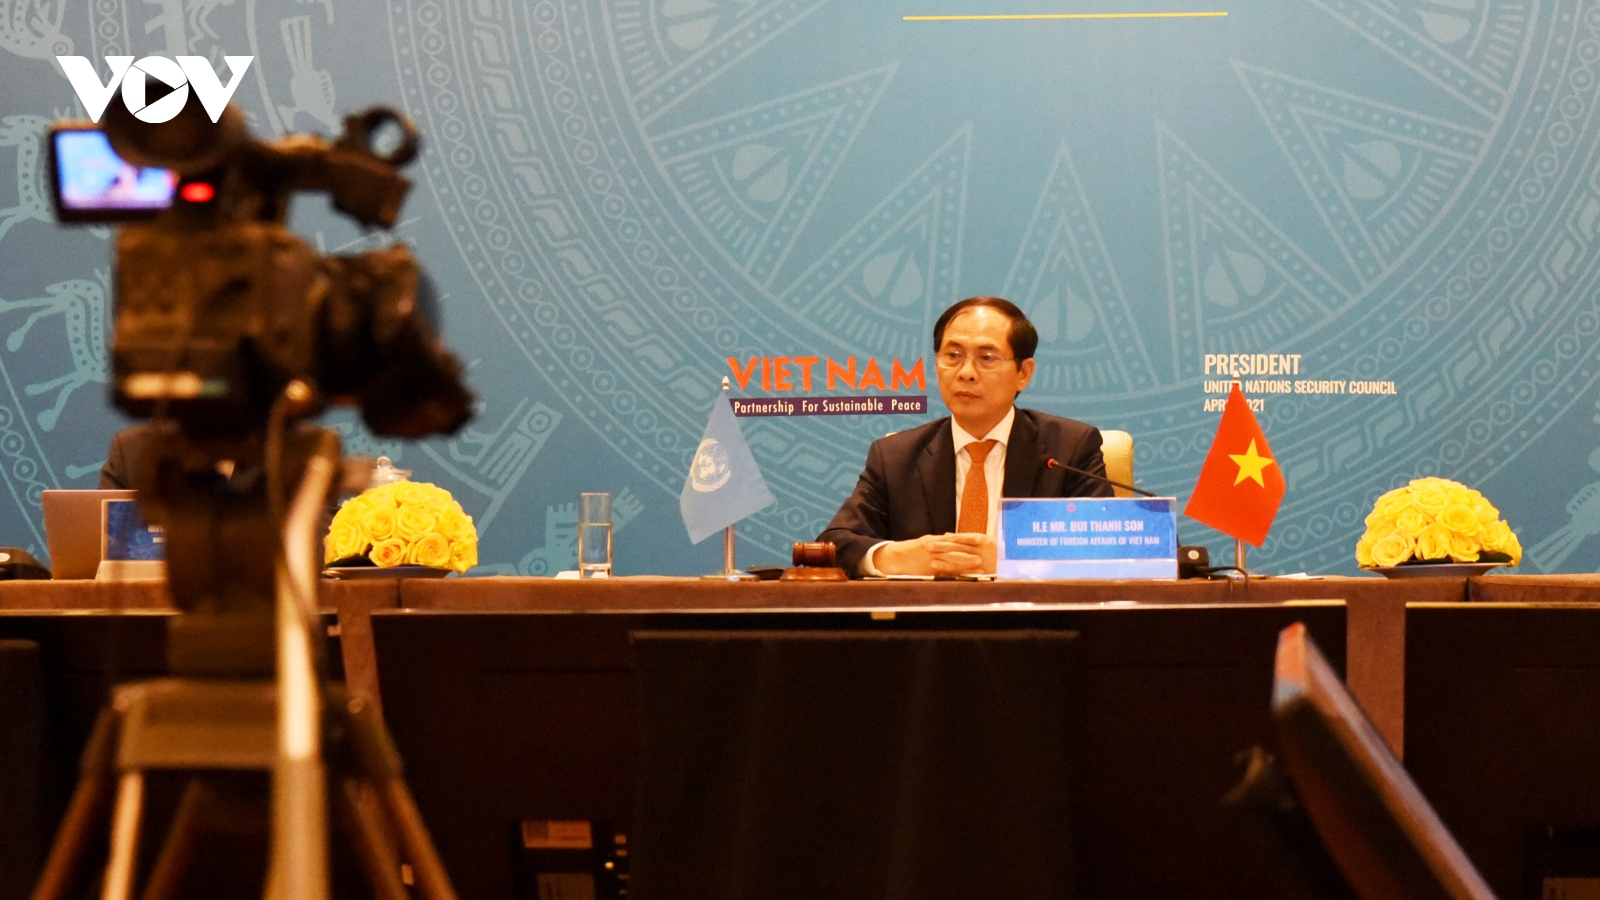 Bộ trưởng Bùi Thanh Sơn: Hòa bình chỉ bền vững khi hậu quả chiến tranh được giải quyết